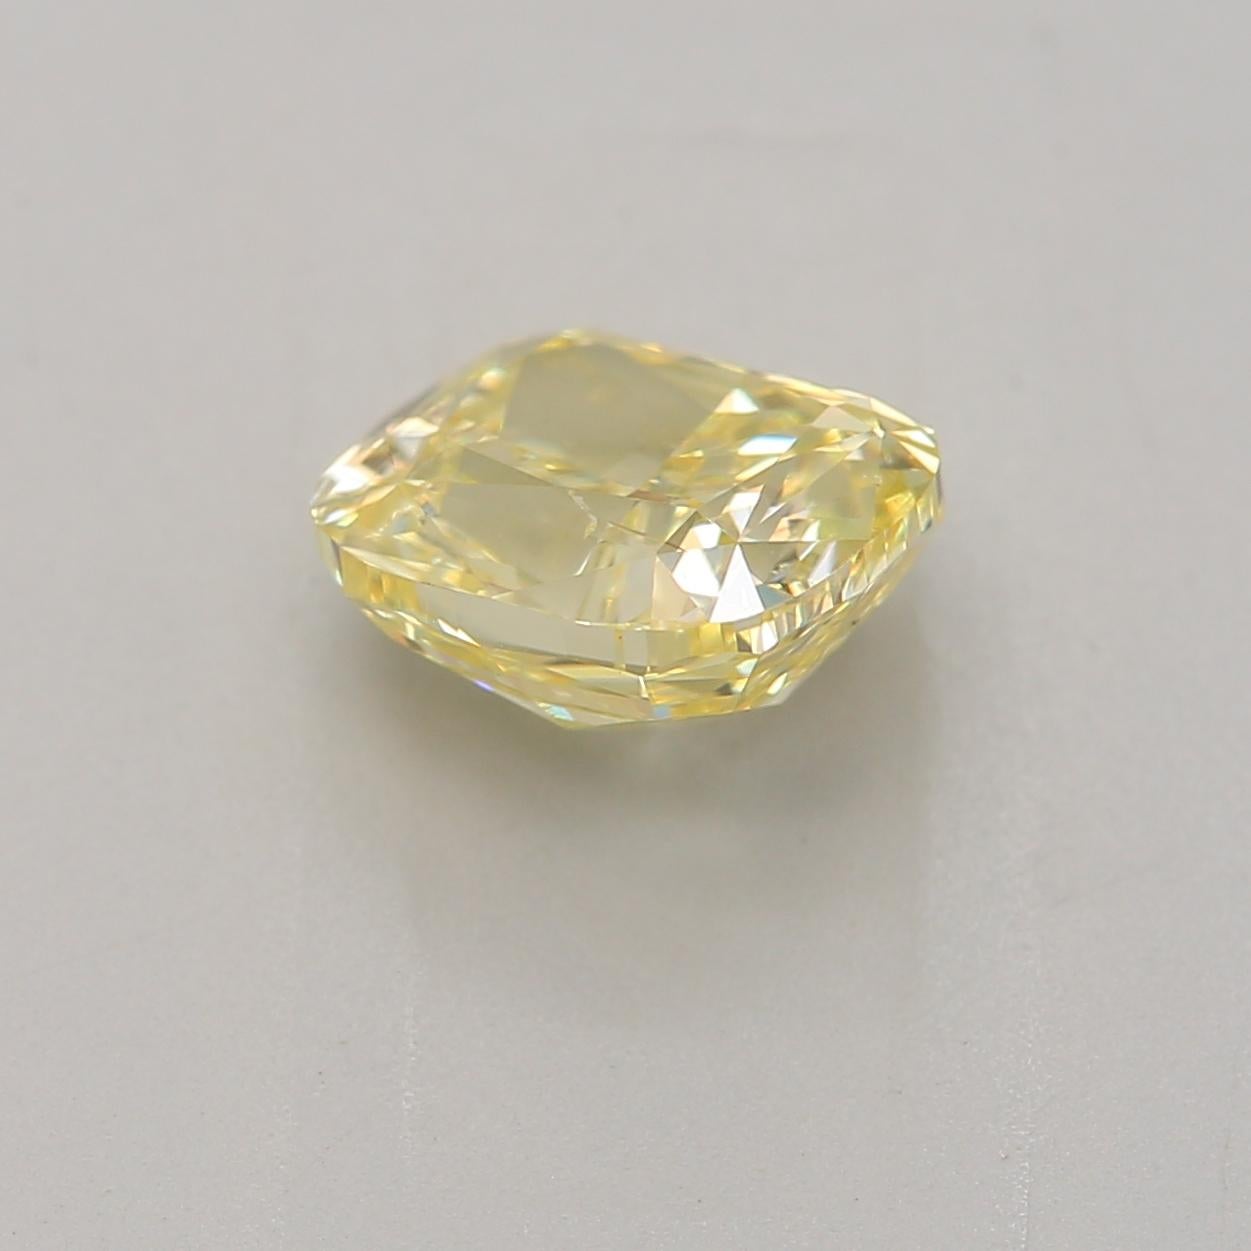 Cushion Cut 1.00 Carat Fancy Intense Yellow Cushion cut diamond SI2 Clarity GIA Certified For Sale